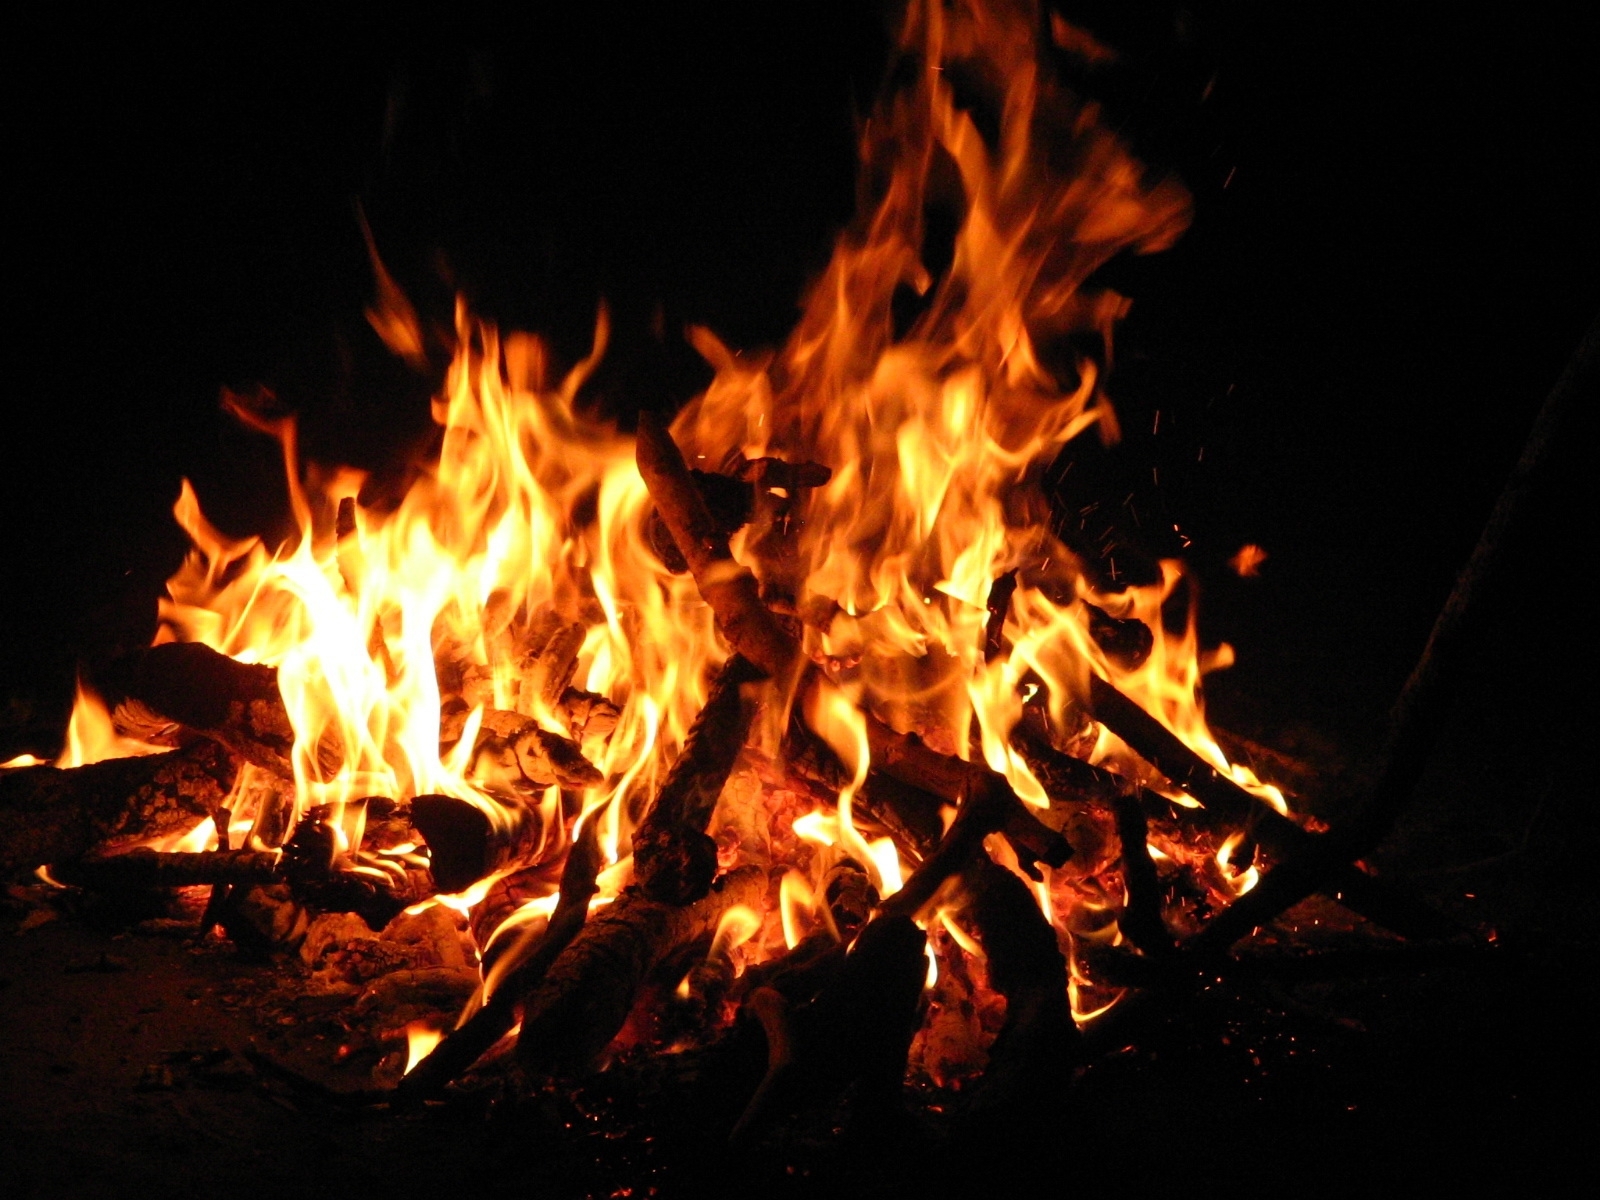 landscape, fire, bonfire, art photo cellphone